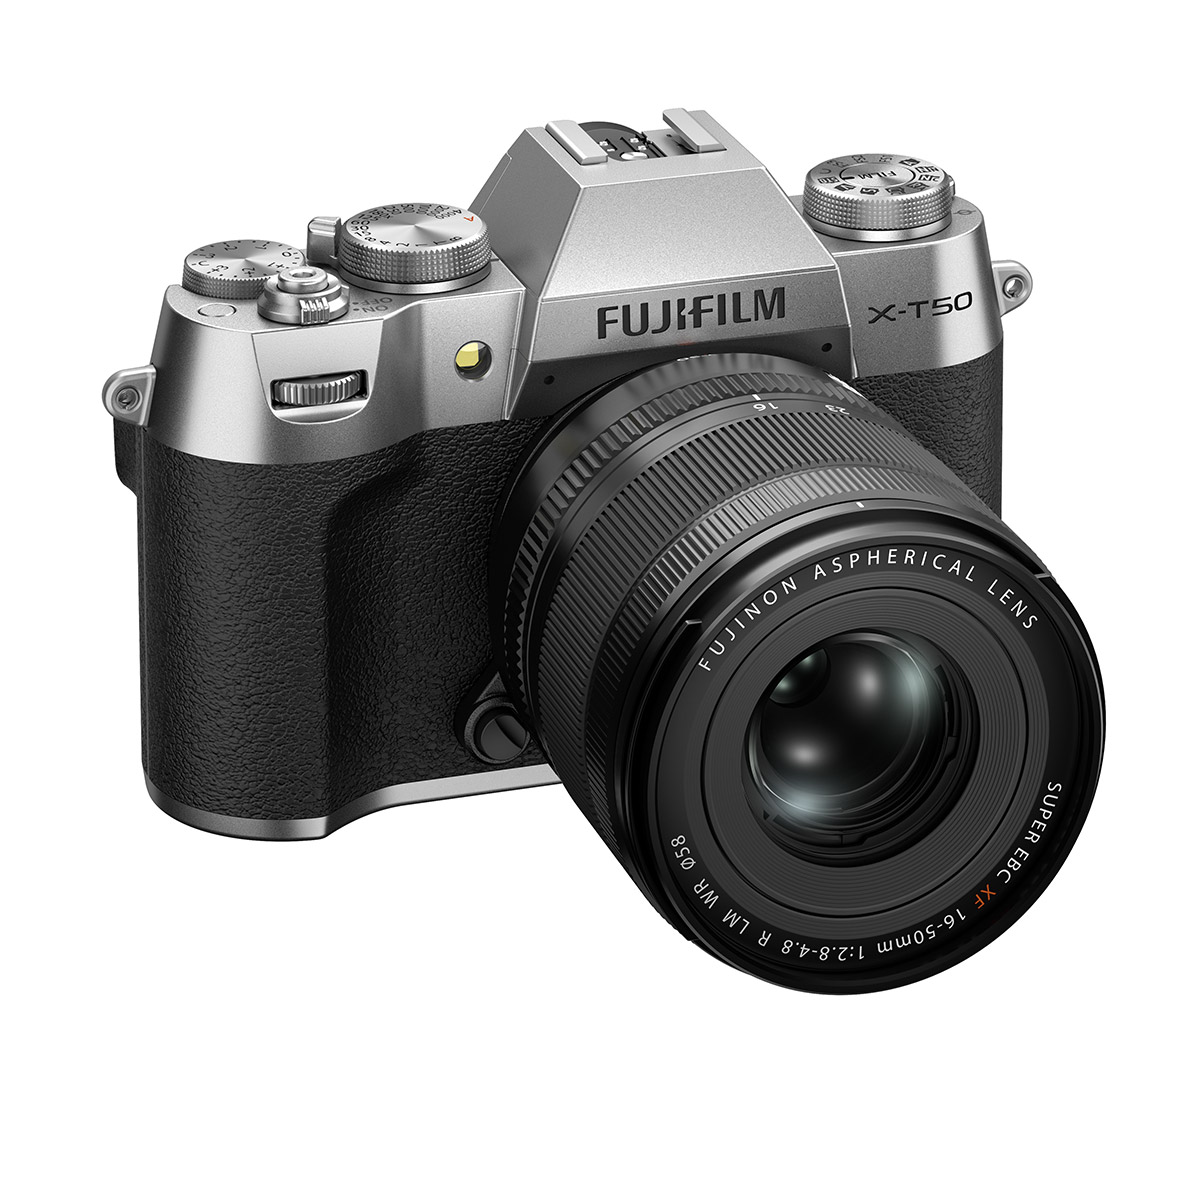 Fujifilm X-T50 kit w/16-50mm Product Image